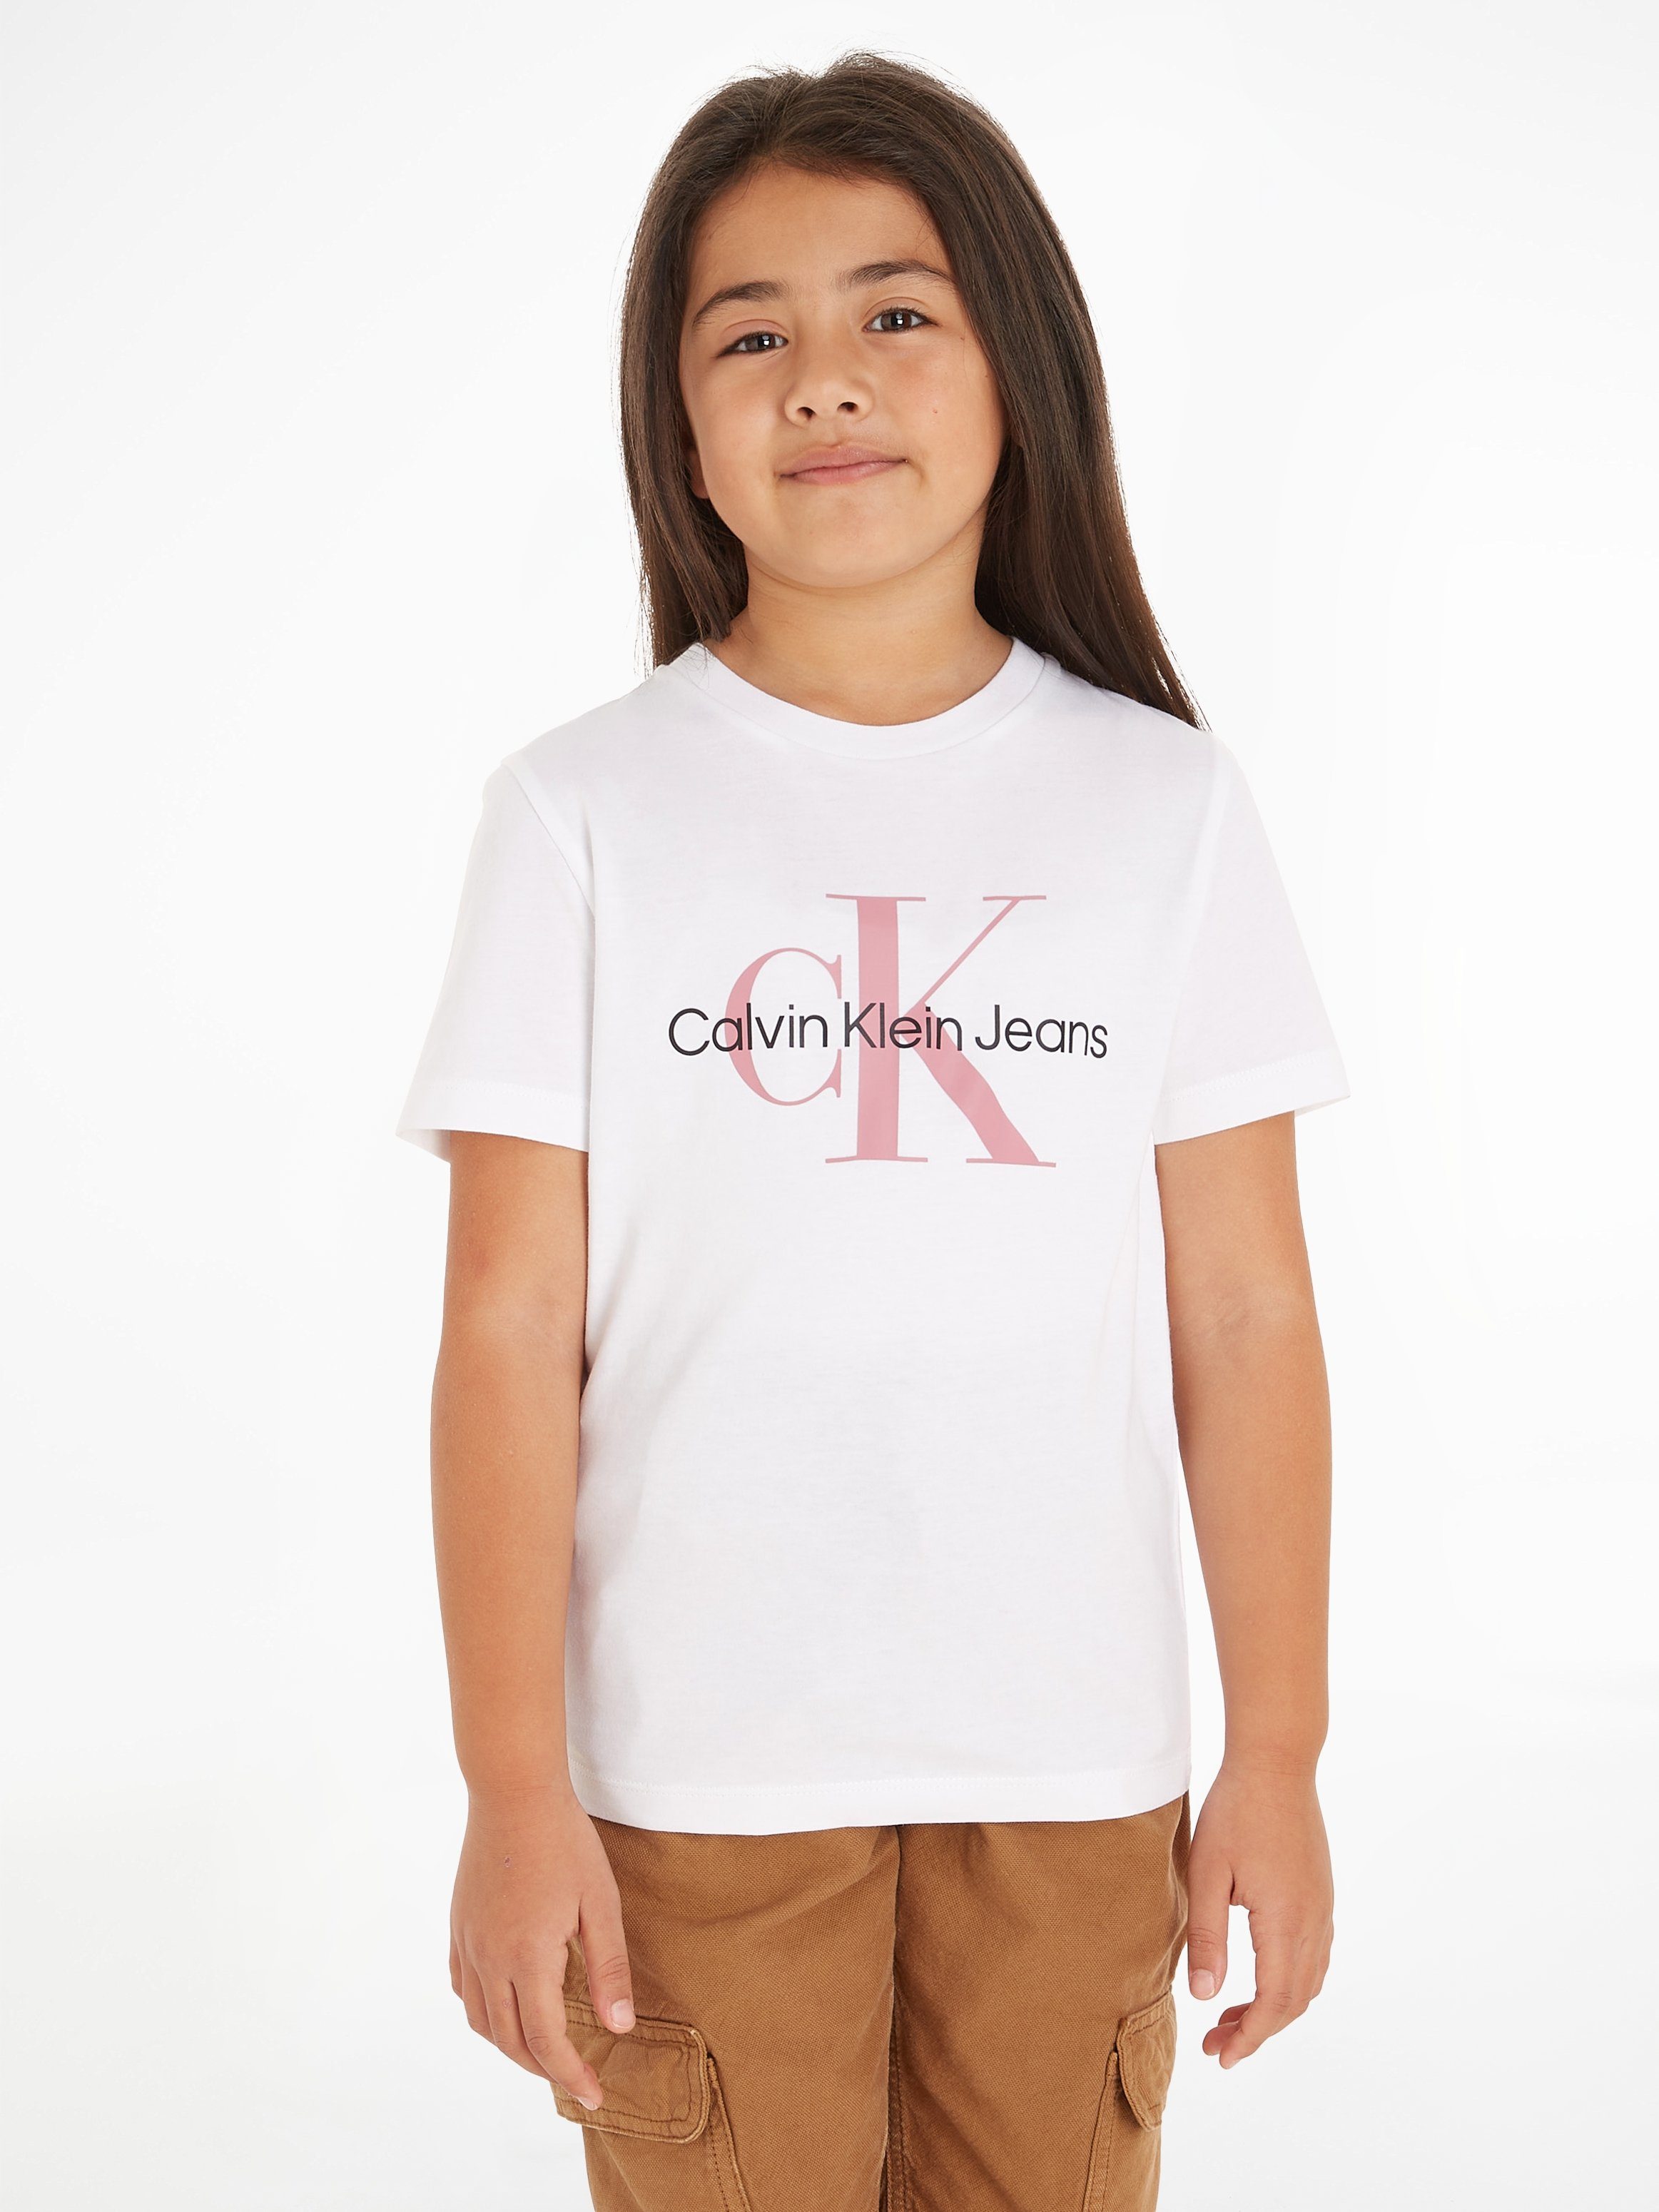 Calvin Klein Jeans T-Shirt SS Jahre T-SHIRT CK für MONOGRAM 16 Kinder bis